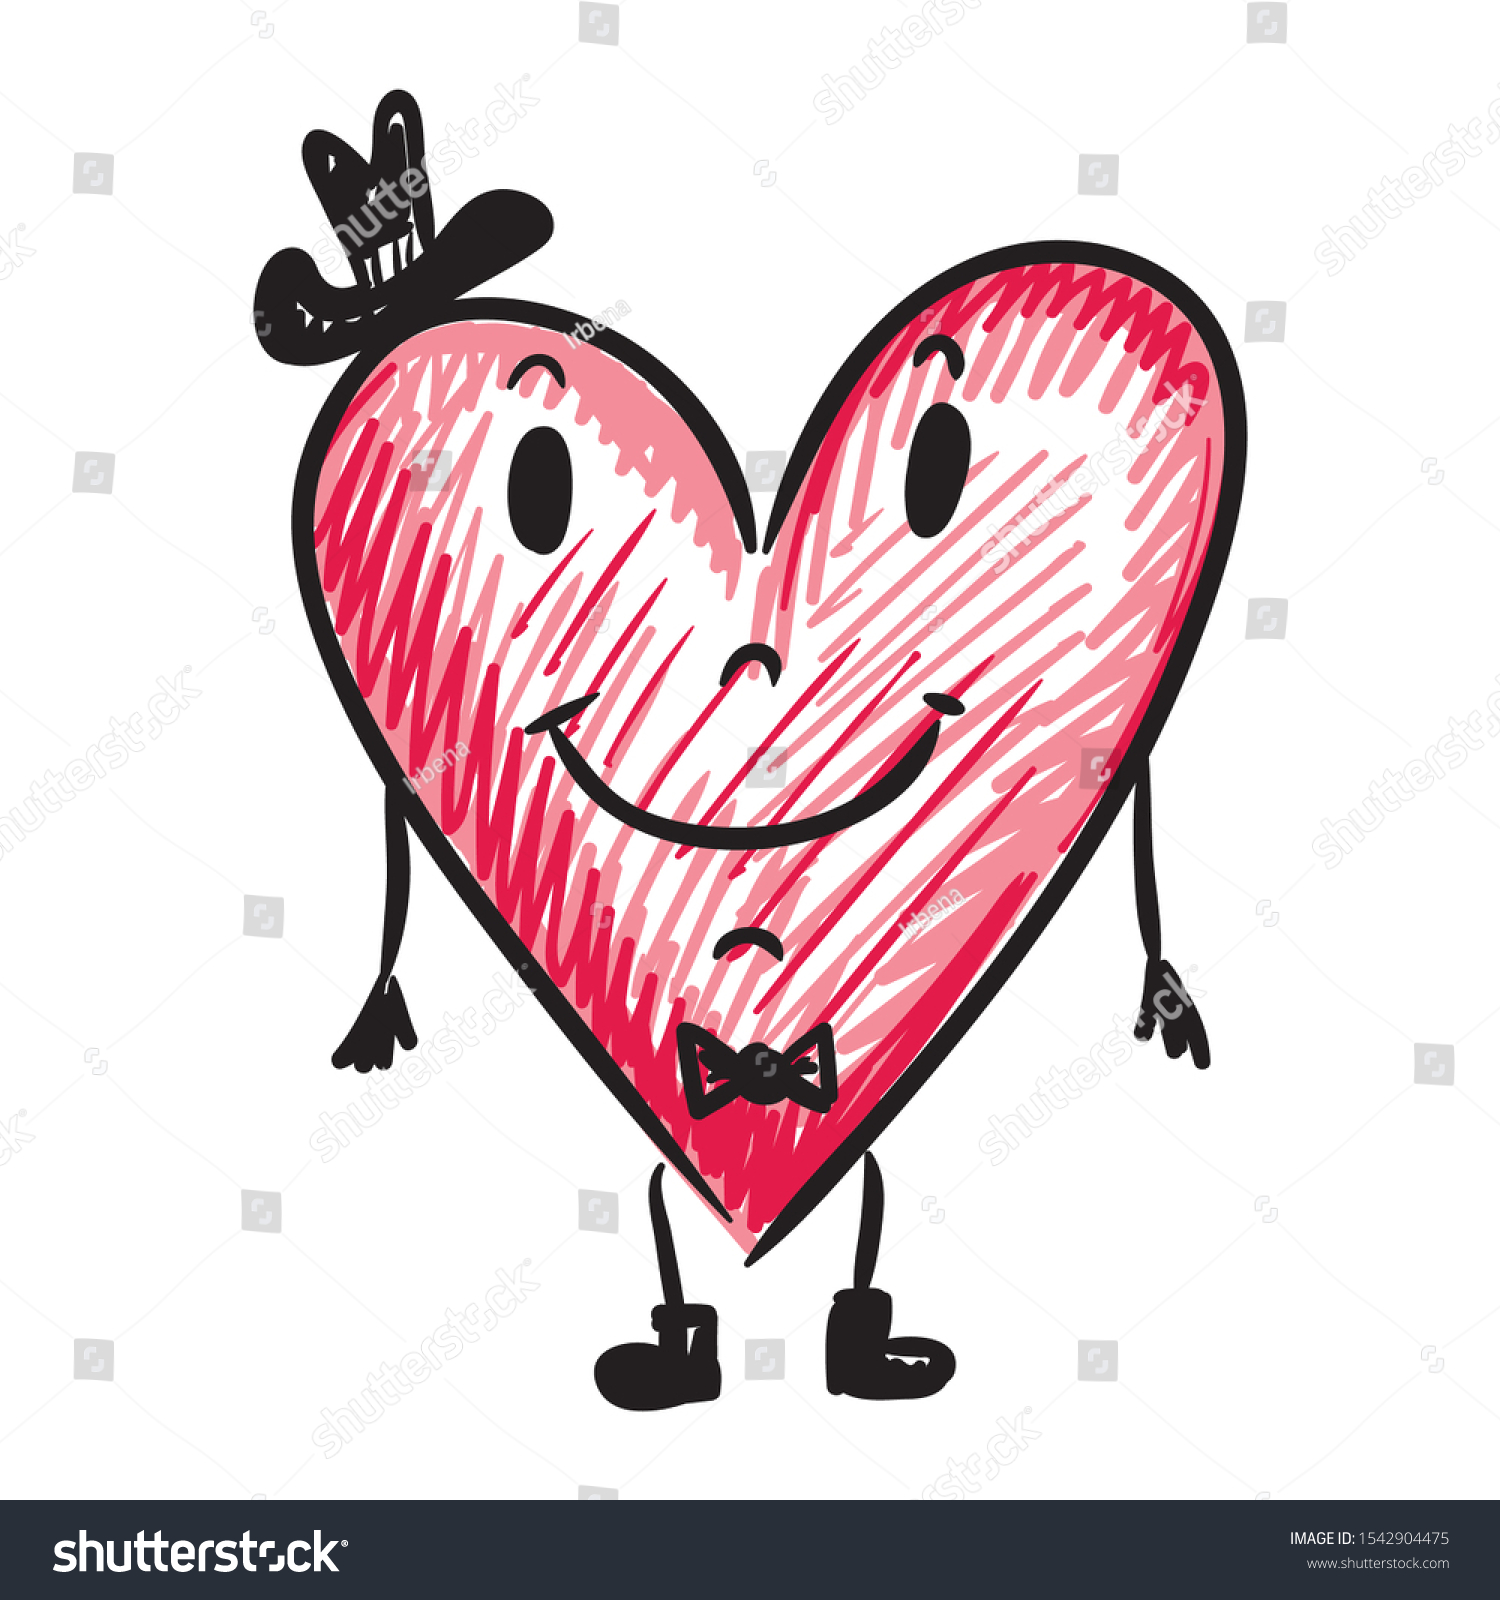 Cute Cartoon Heart Sketch Vector Illustration Stock Vector Royalty Free 1542904475 Shutterstock